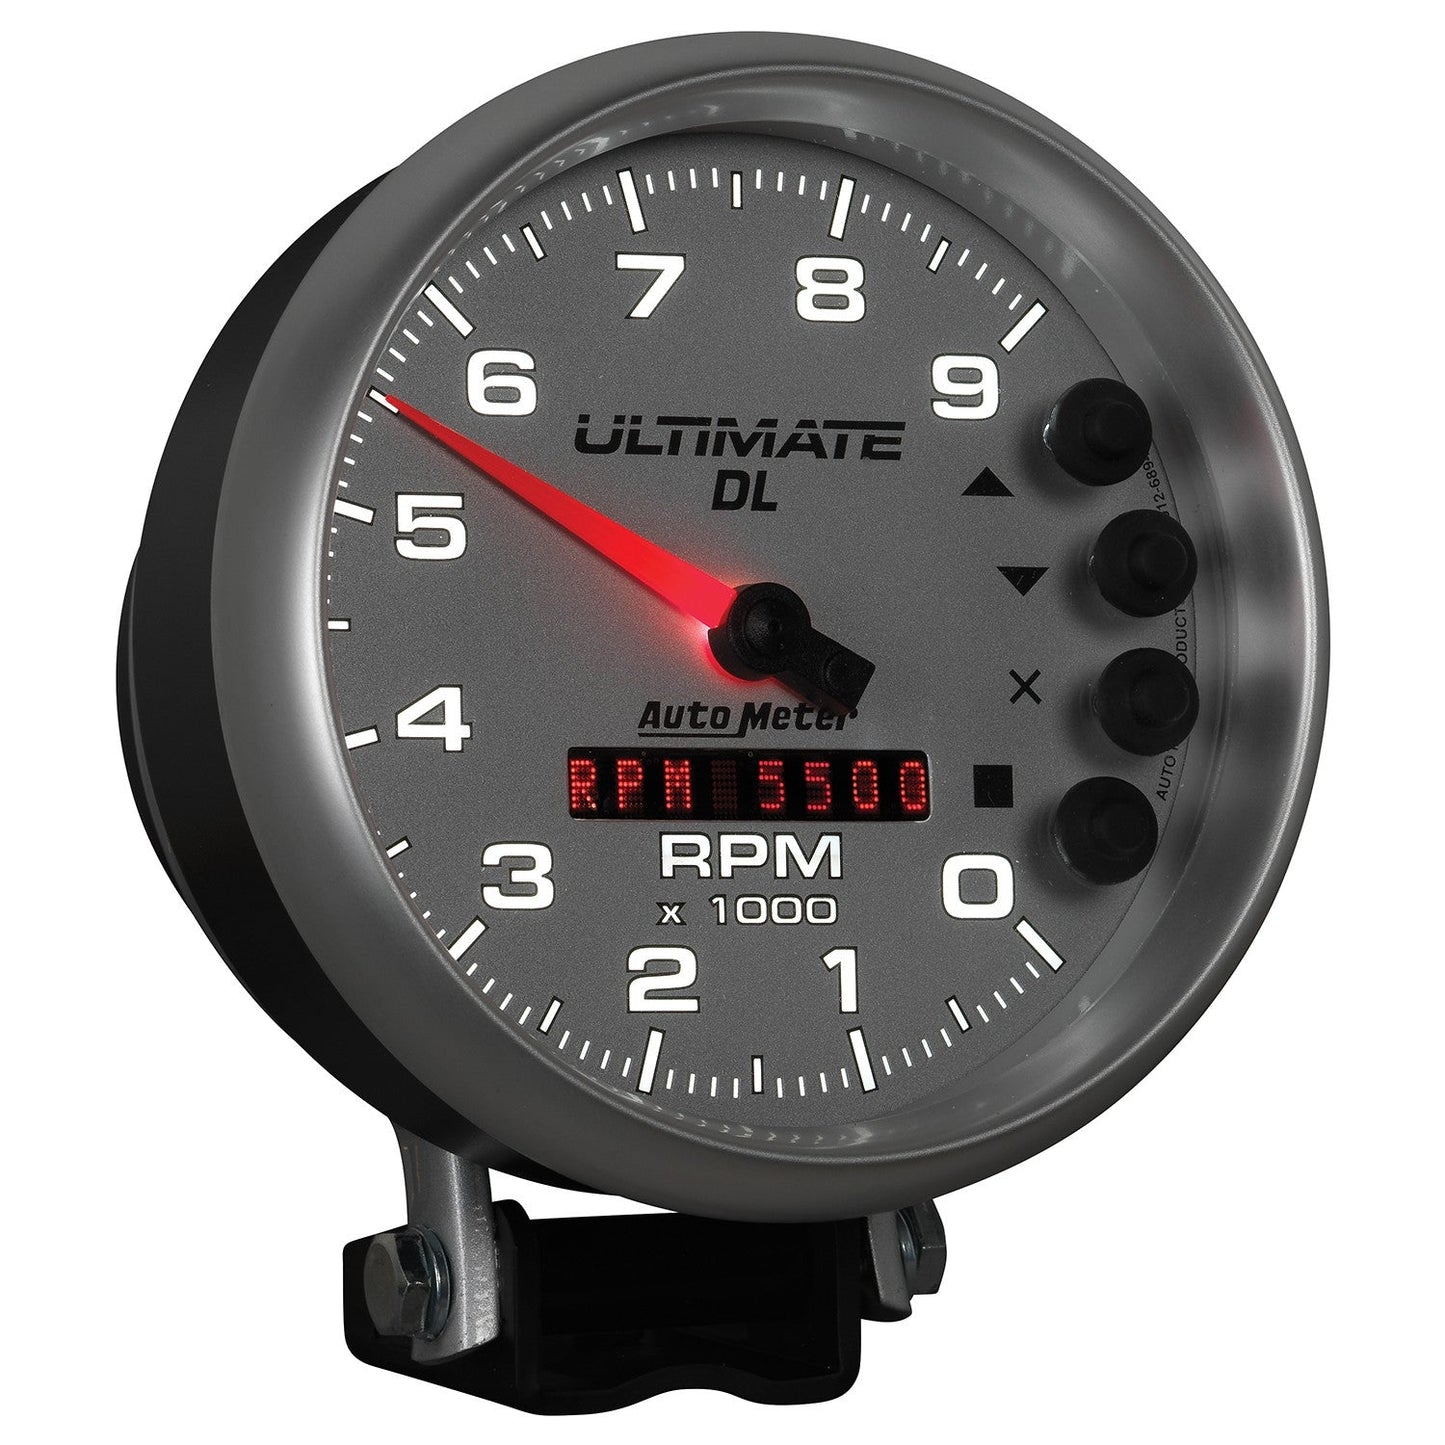 AutoMeter - TACÓMETRO DE 5", 0-9000 RPM, PEDESTAL, REPRODUCCIÓN ULTIMATE DL, PLATA (6894)